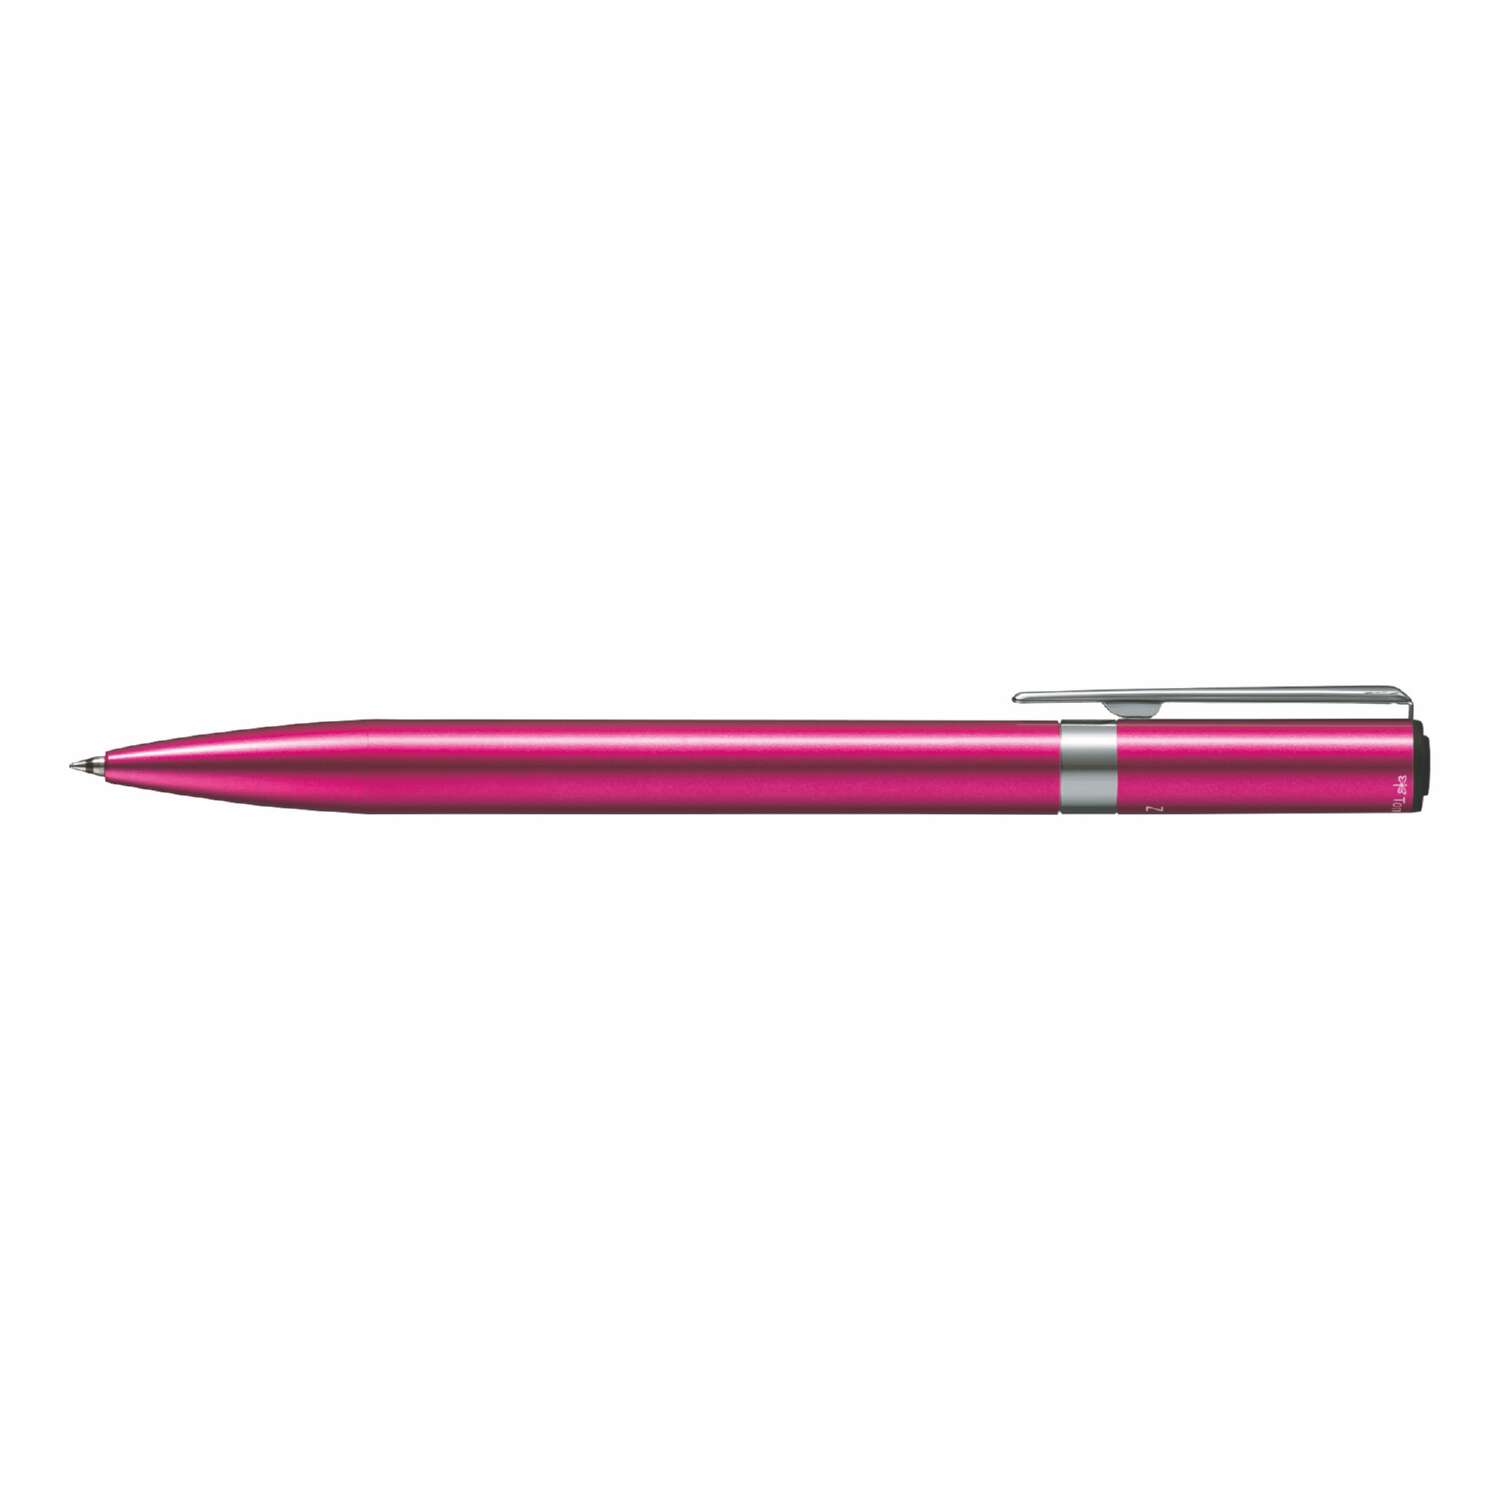 Ручка шариковая Tombow ZOOM L105 City черная корпус розовый линия 0.7 мм - фото 2